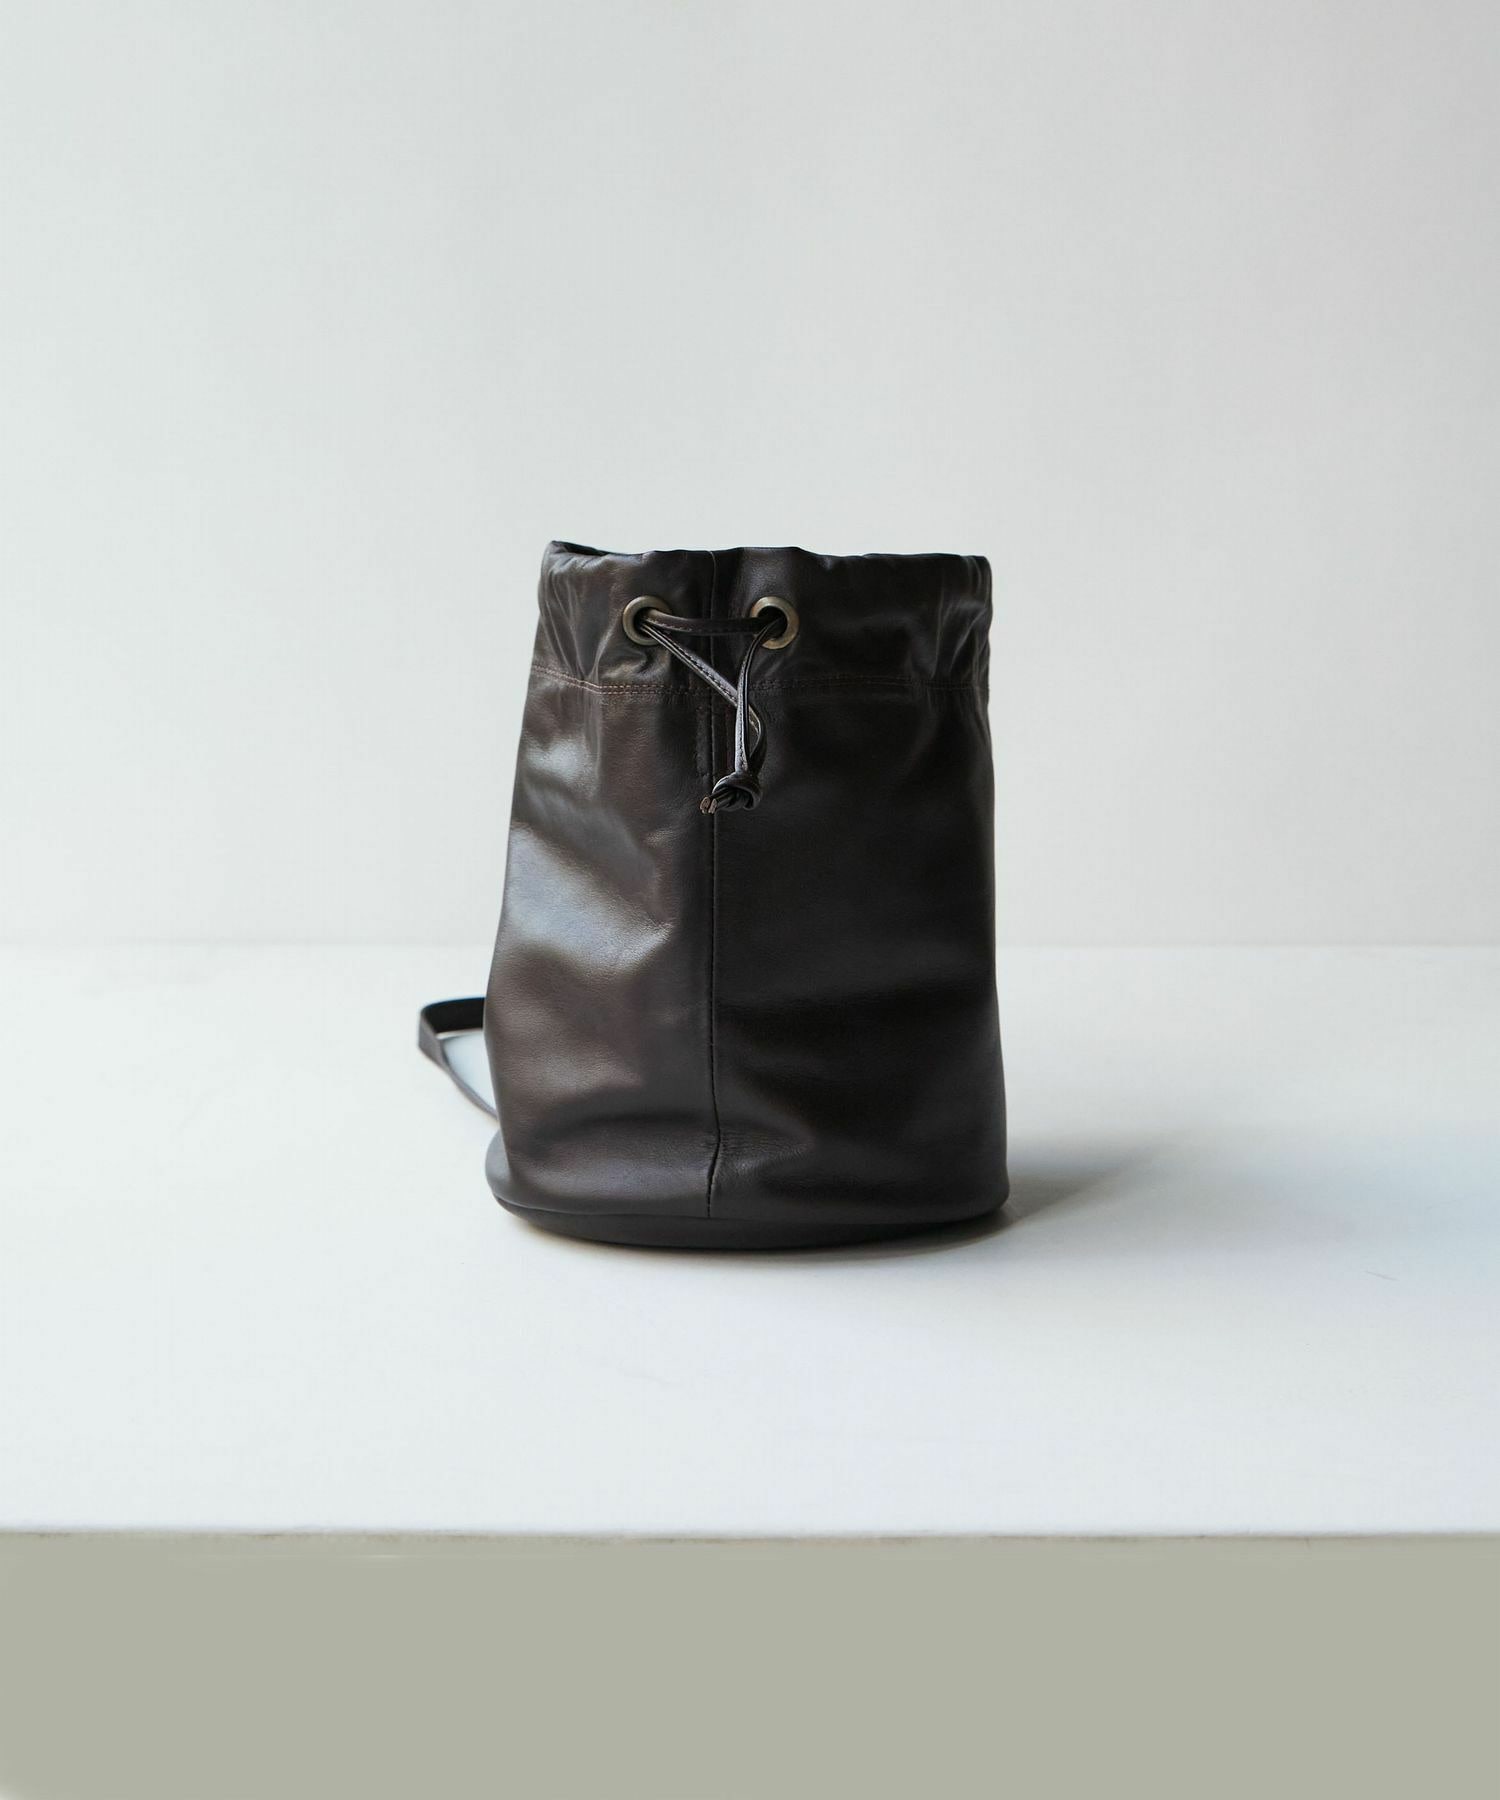 【LOISIR】レザー巾着Bag 詳細画像 ブラック 2